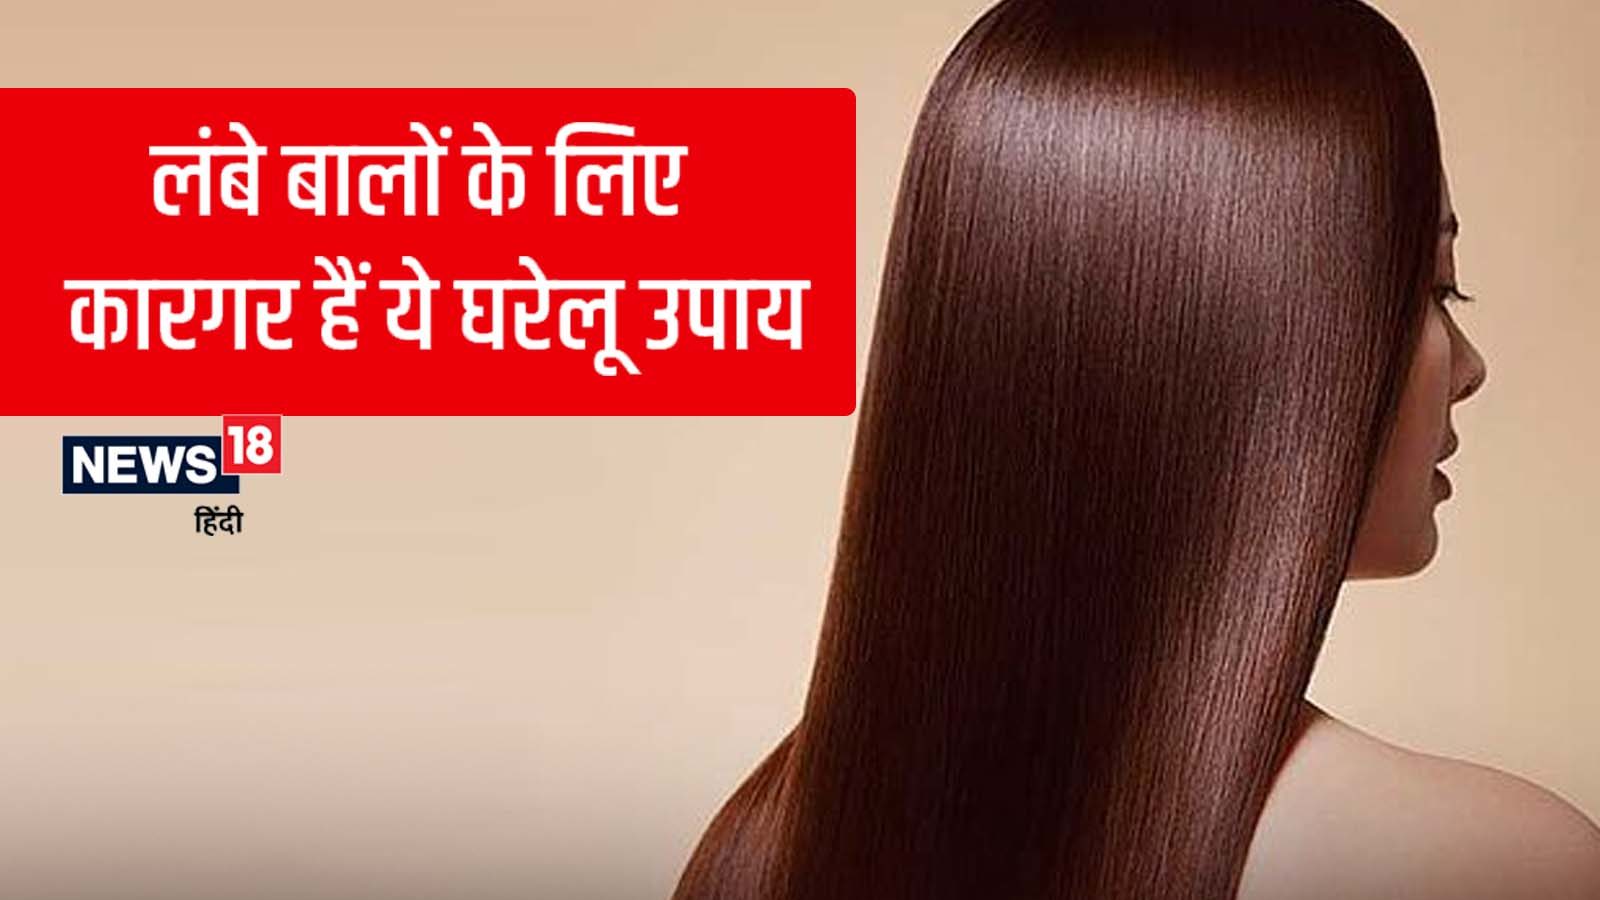 Natural home remedies for fast hair growth in hindi pra - कमर तक लंबा करना  चाहती हैं बालों को, तो ये घरेलू नुस्‍खे आएंगे बहुत काम – News18 हिंदी